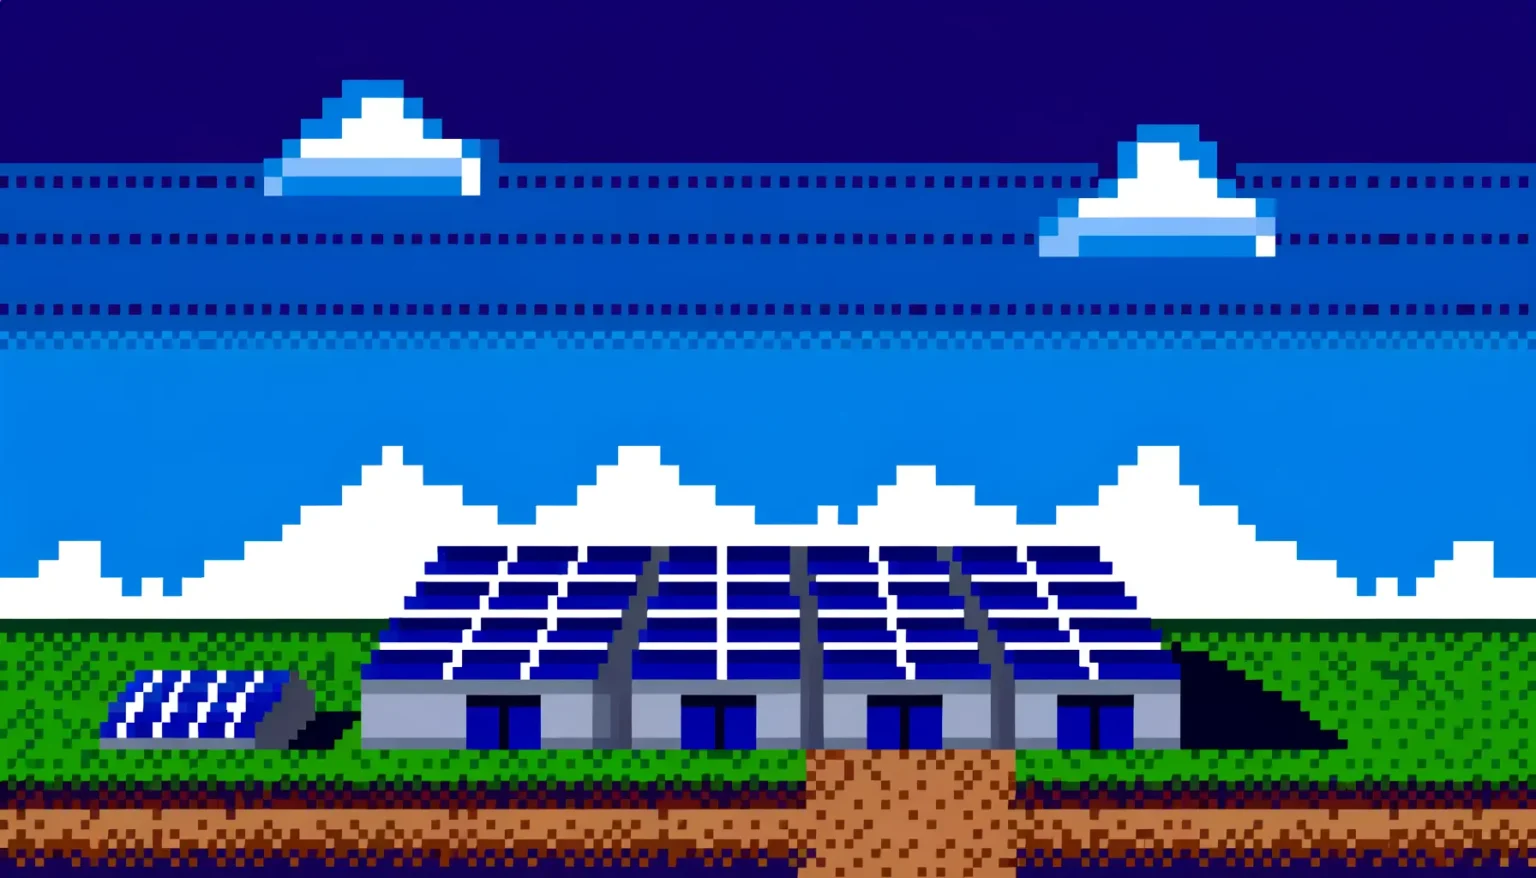 Eine pixelige Darstellung einer Landschaft mit Solarpanelen im Vordergrund auf grünem Gras, einem braunen Bodenstreifen unten, einem blauen Himmel mit weißen Wolken und weißen Bergspitzen im Hintergrund.